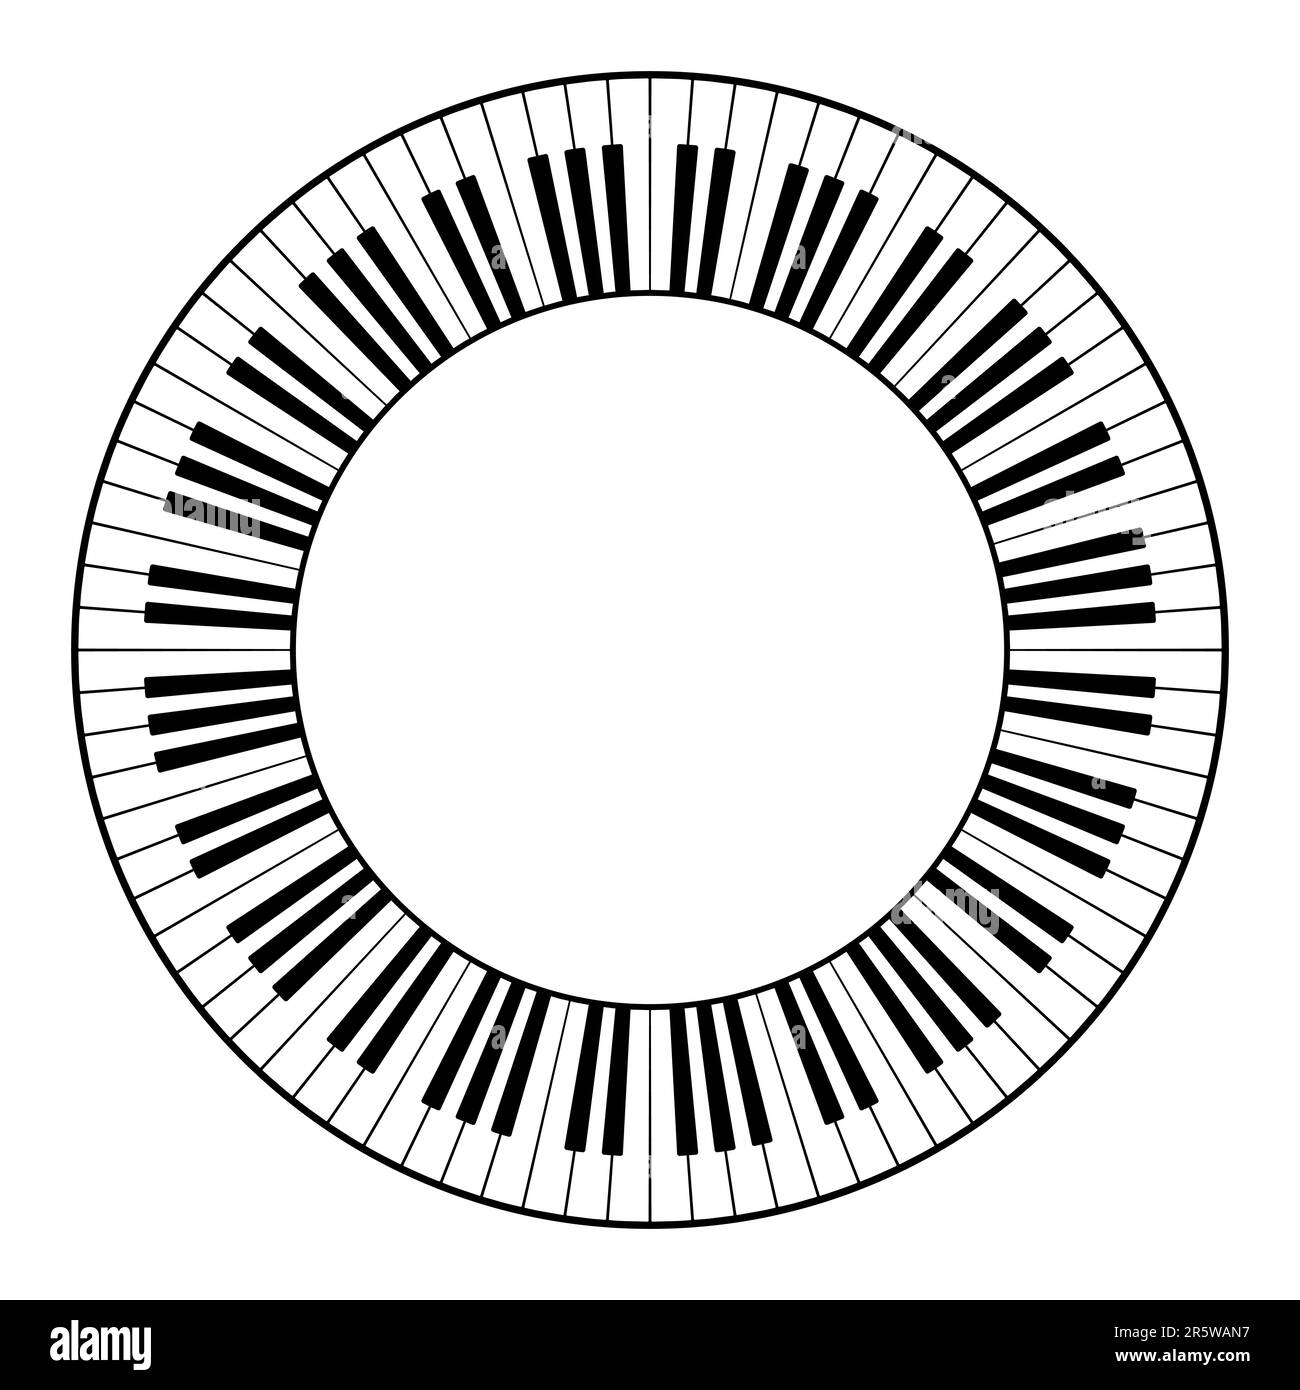 Tastiera musicale a dodici ottave, cornice circolare. Bordo decorativo, costruito da dodici ottave, tasti bianco e nero della tastiera del pianoforte. Foto Stock